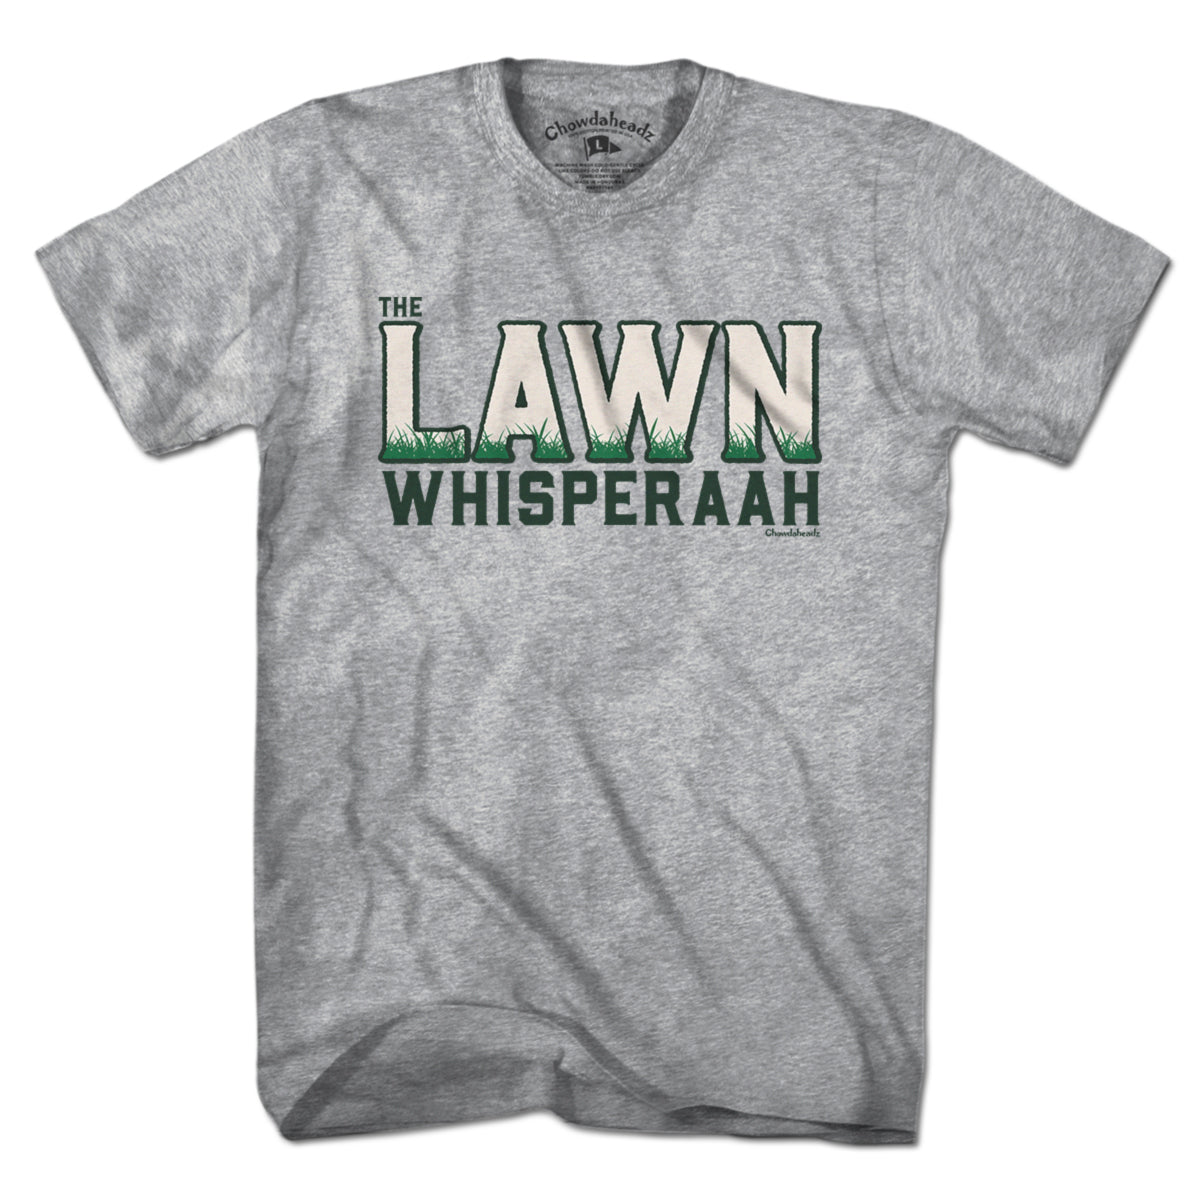 The Lawn Whisperaah T-Shirt - Chowdaheadz